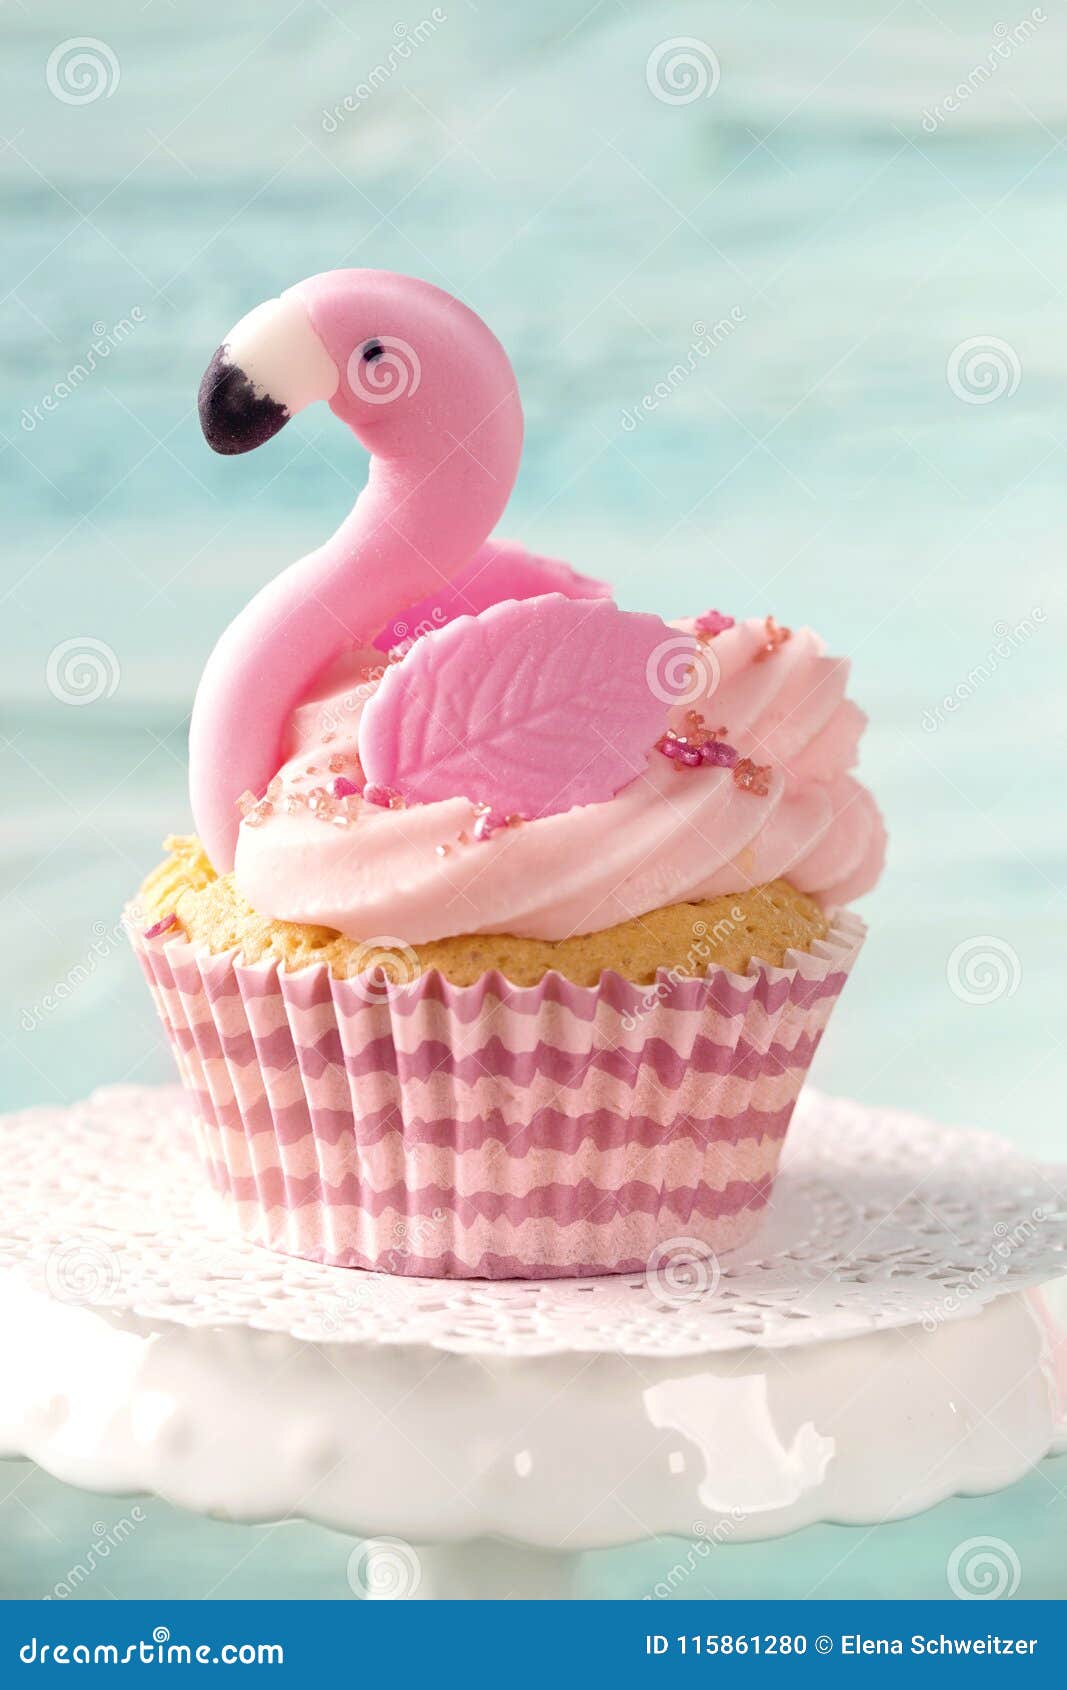 Featured image of post Fotos De Cupcake De Flamingo : Gratis para usos comerciales ✓ no es necesario reconocimiento ✓.